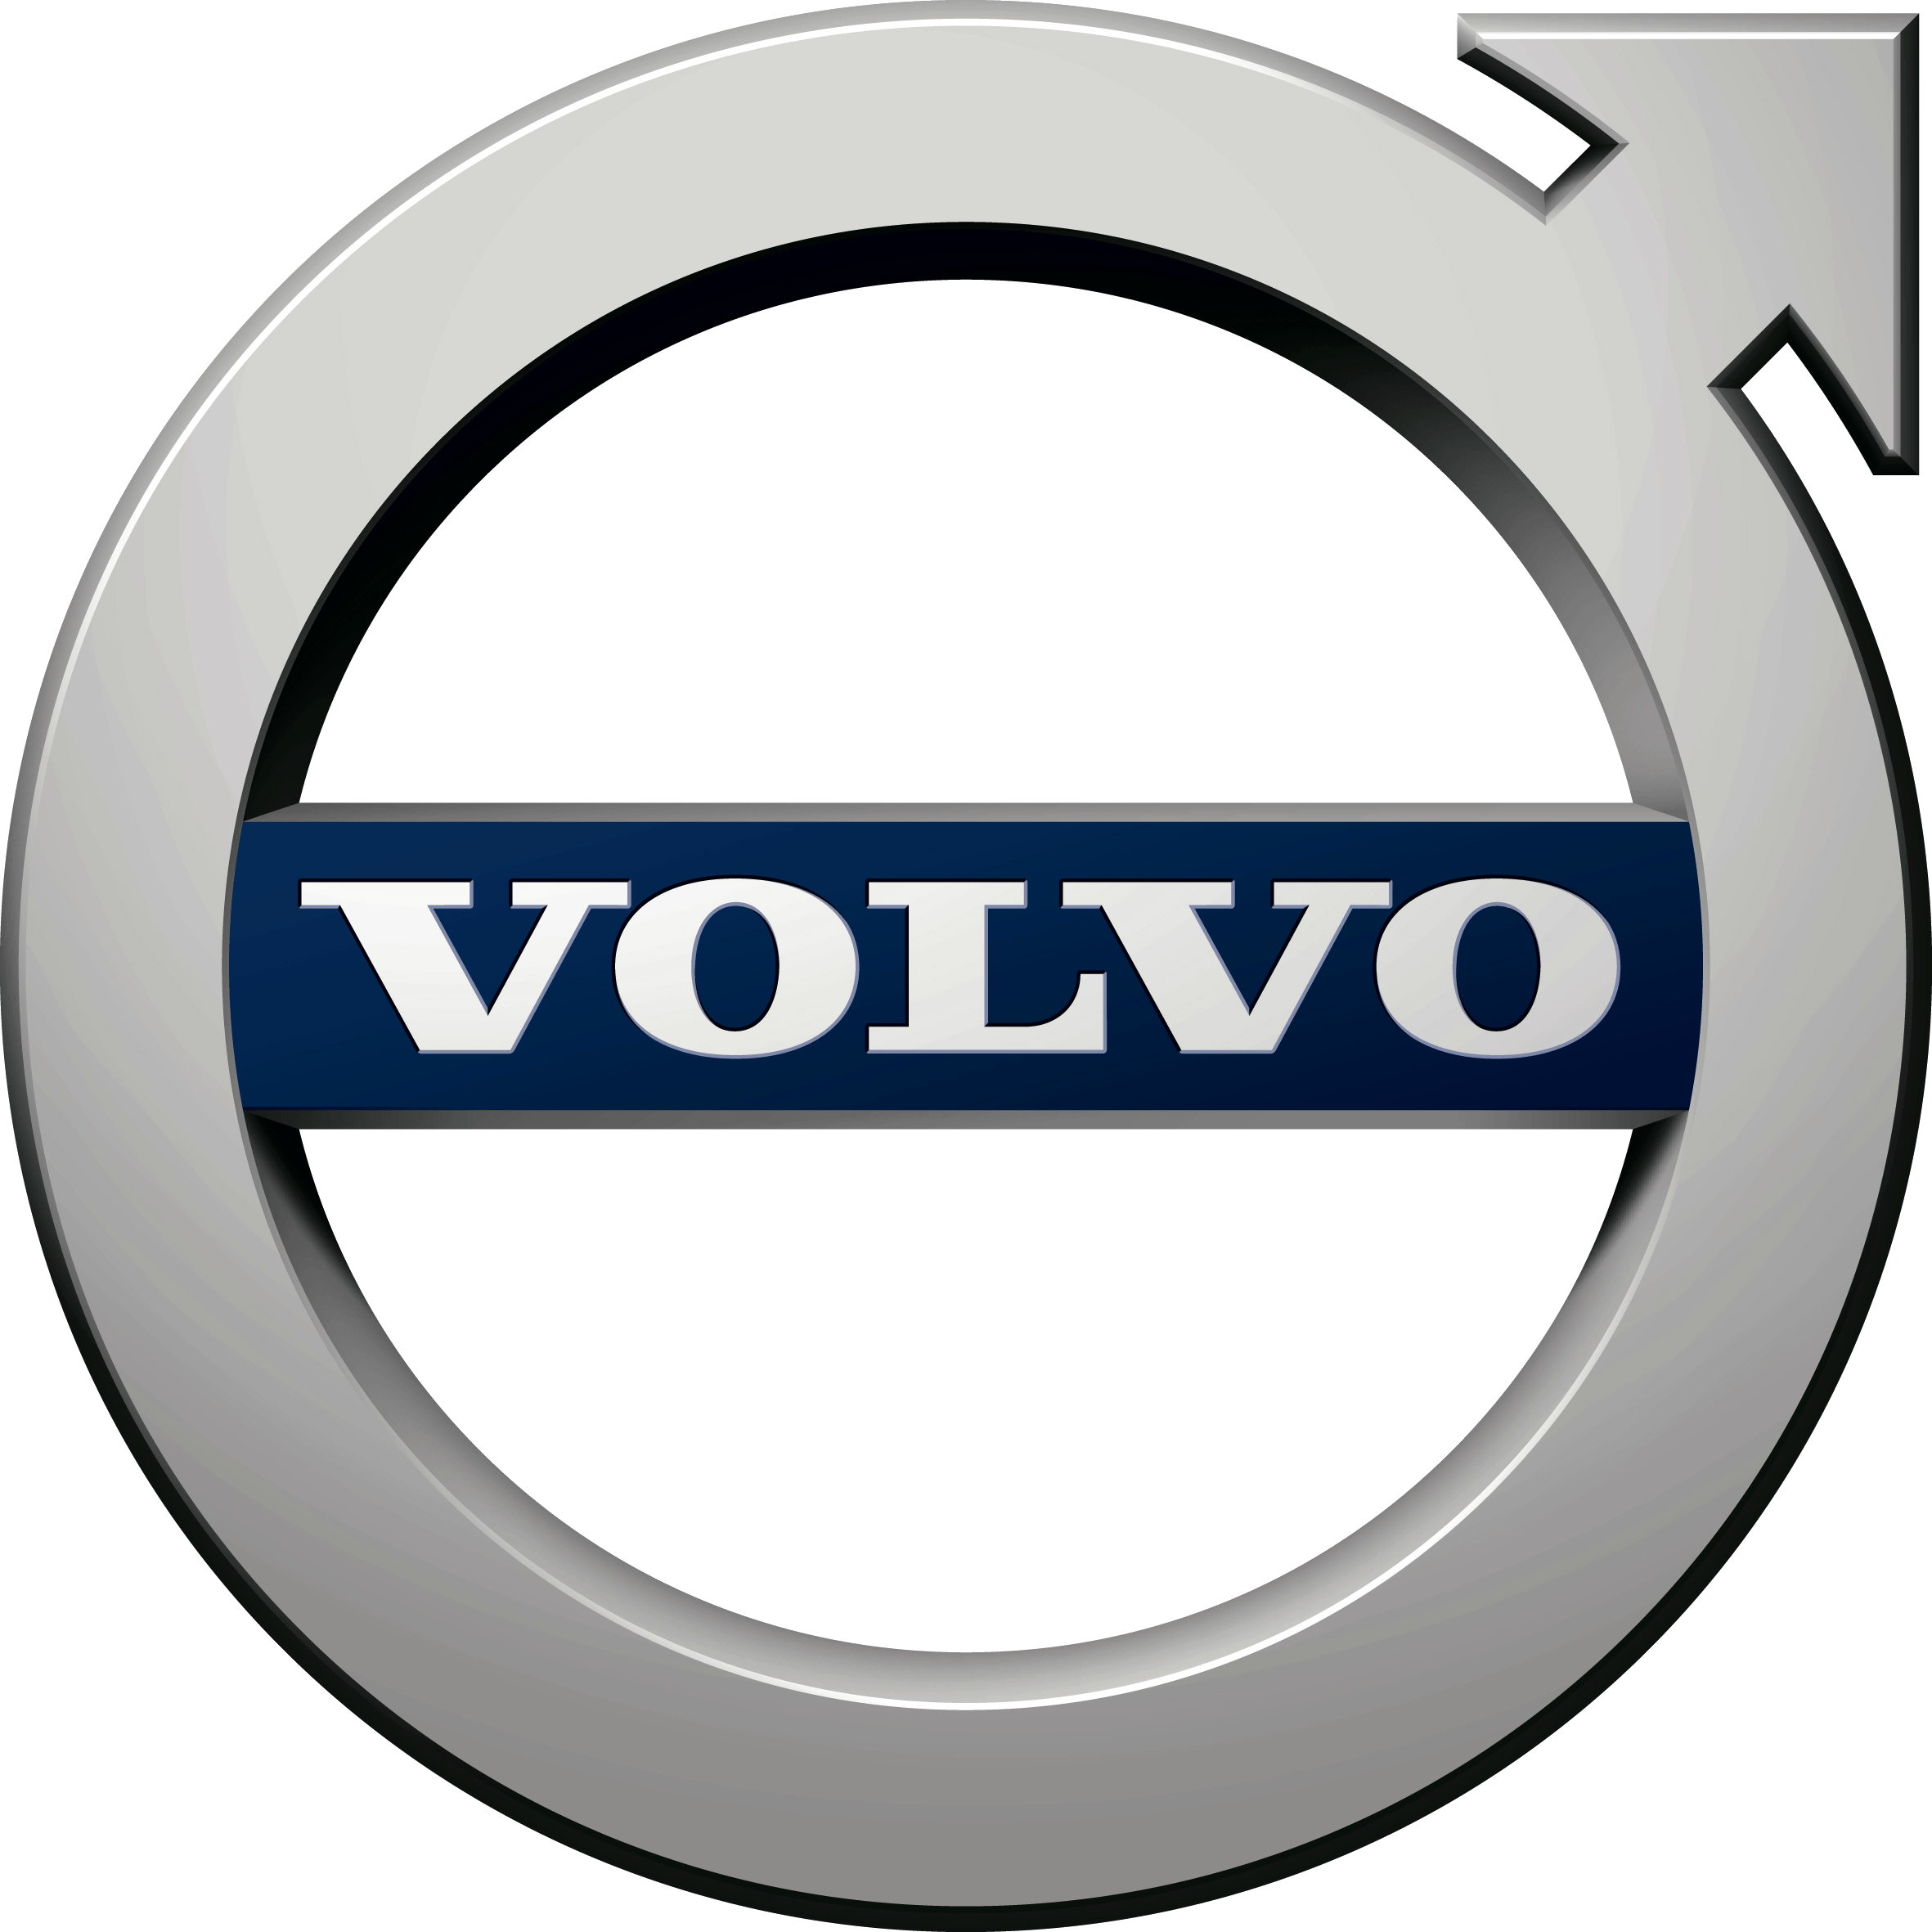 Car Symbols Logo - Volvo Logo, Volvo Car Symbol Meaning and History. Car Brand Names.com